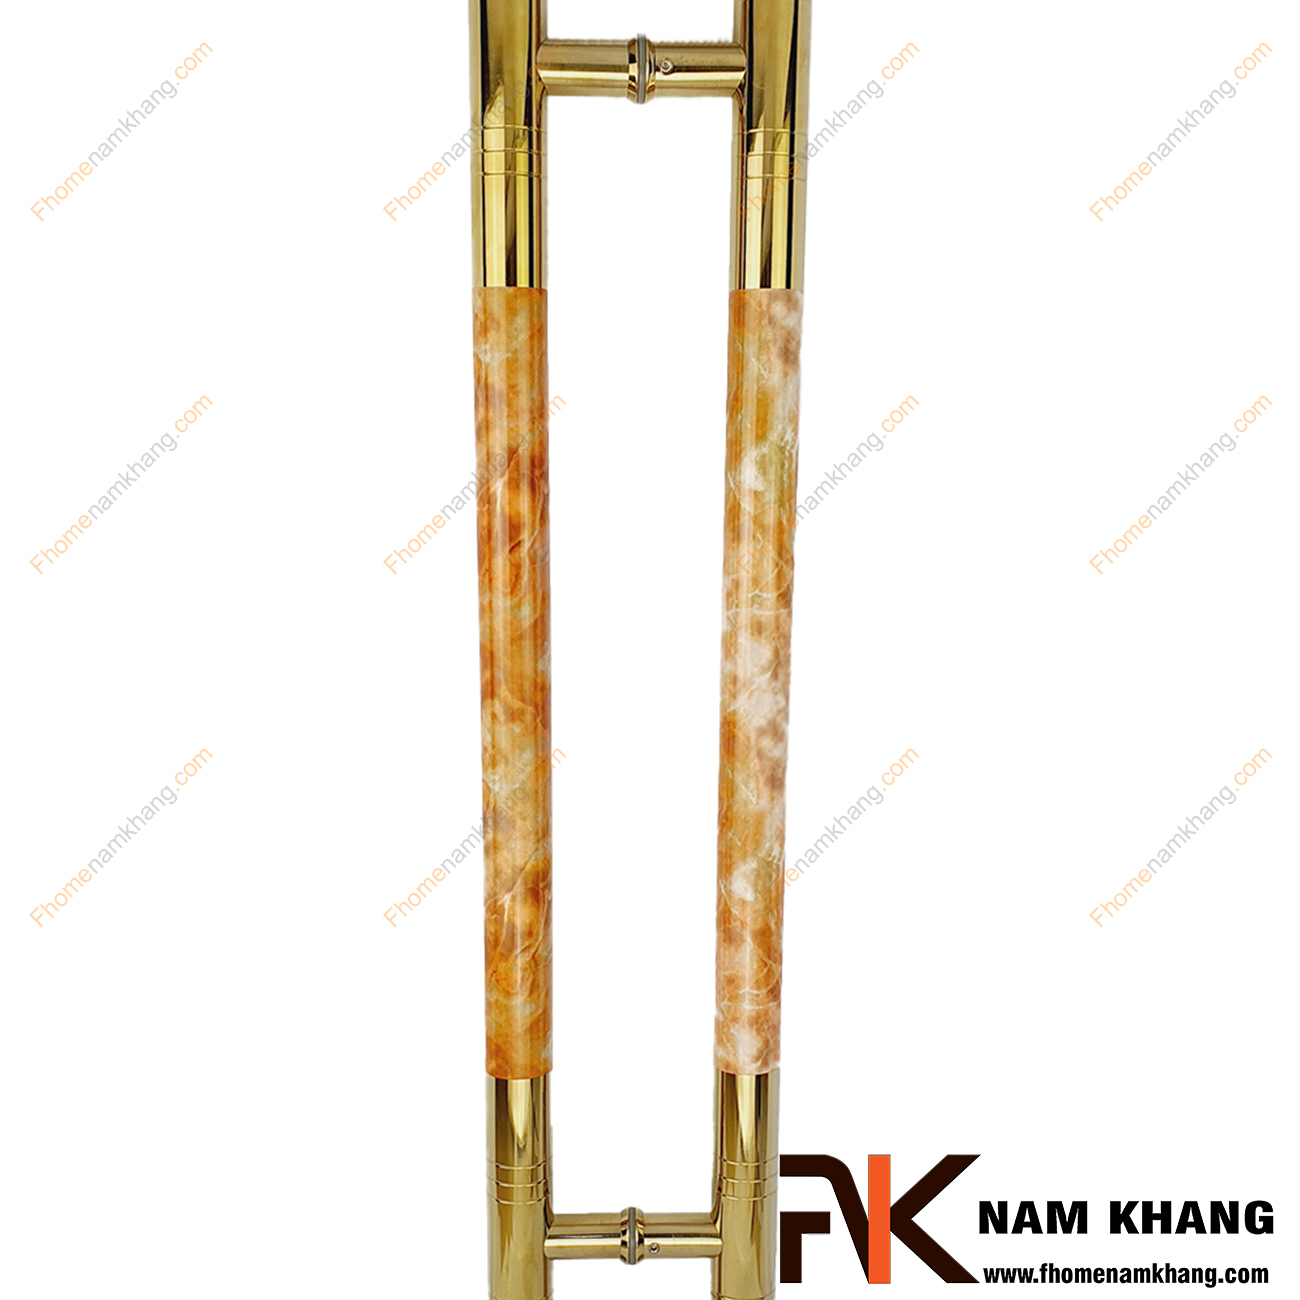 Tay nắm cửa chính màu vàng bóng phối vân đá cam NKC014-CV được sản xuất từ chất liệu cao cấp, có kích thước lớn chuyên dùng cho cửa kính, cửa gỗ, cửa 2 hoặc 4 cánh,...